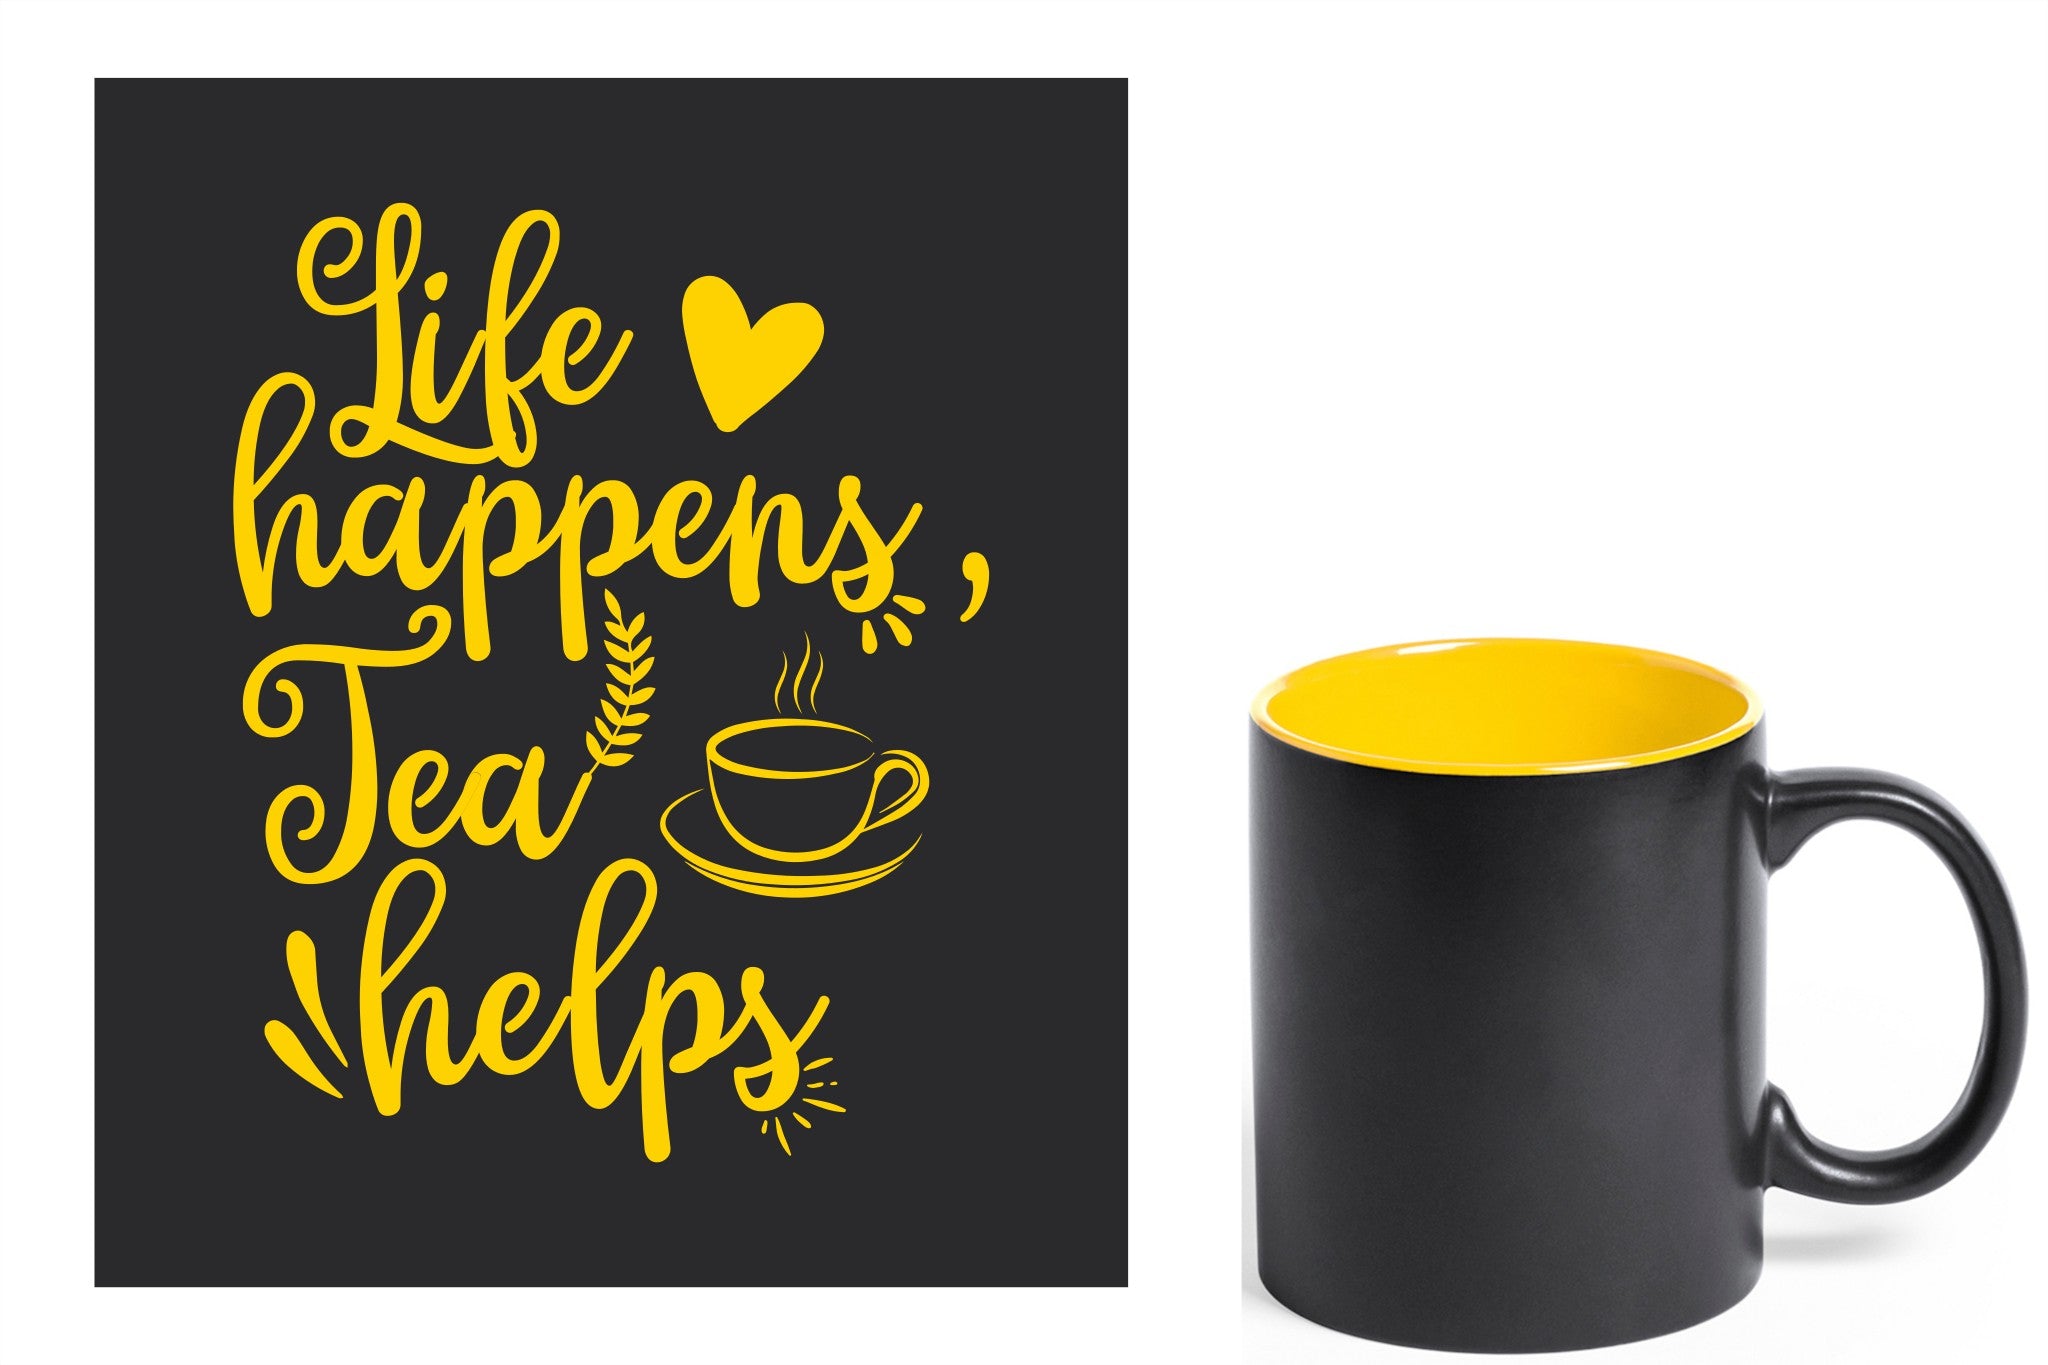 zwarte keramische mok met gele gravure  'Life happens tea helps'.